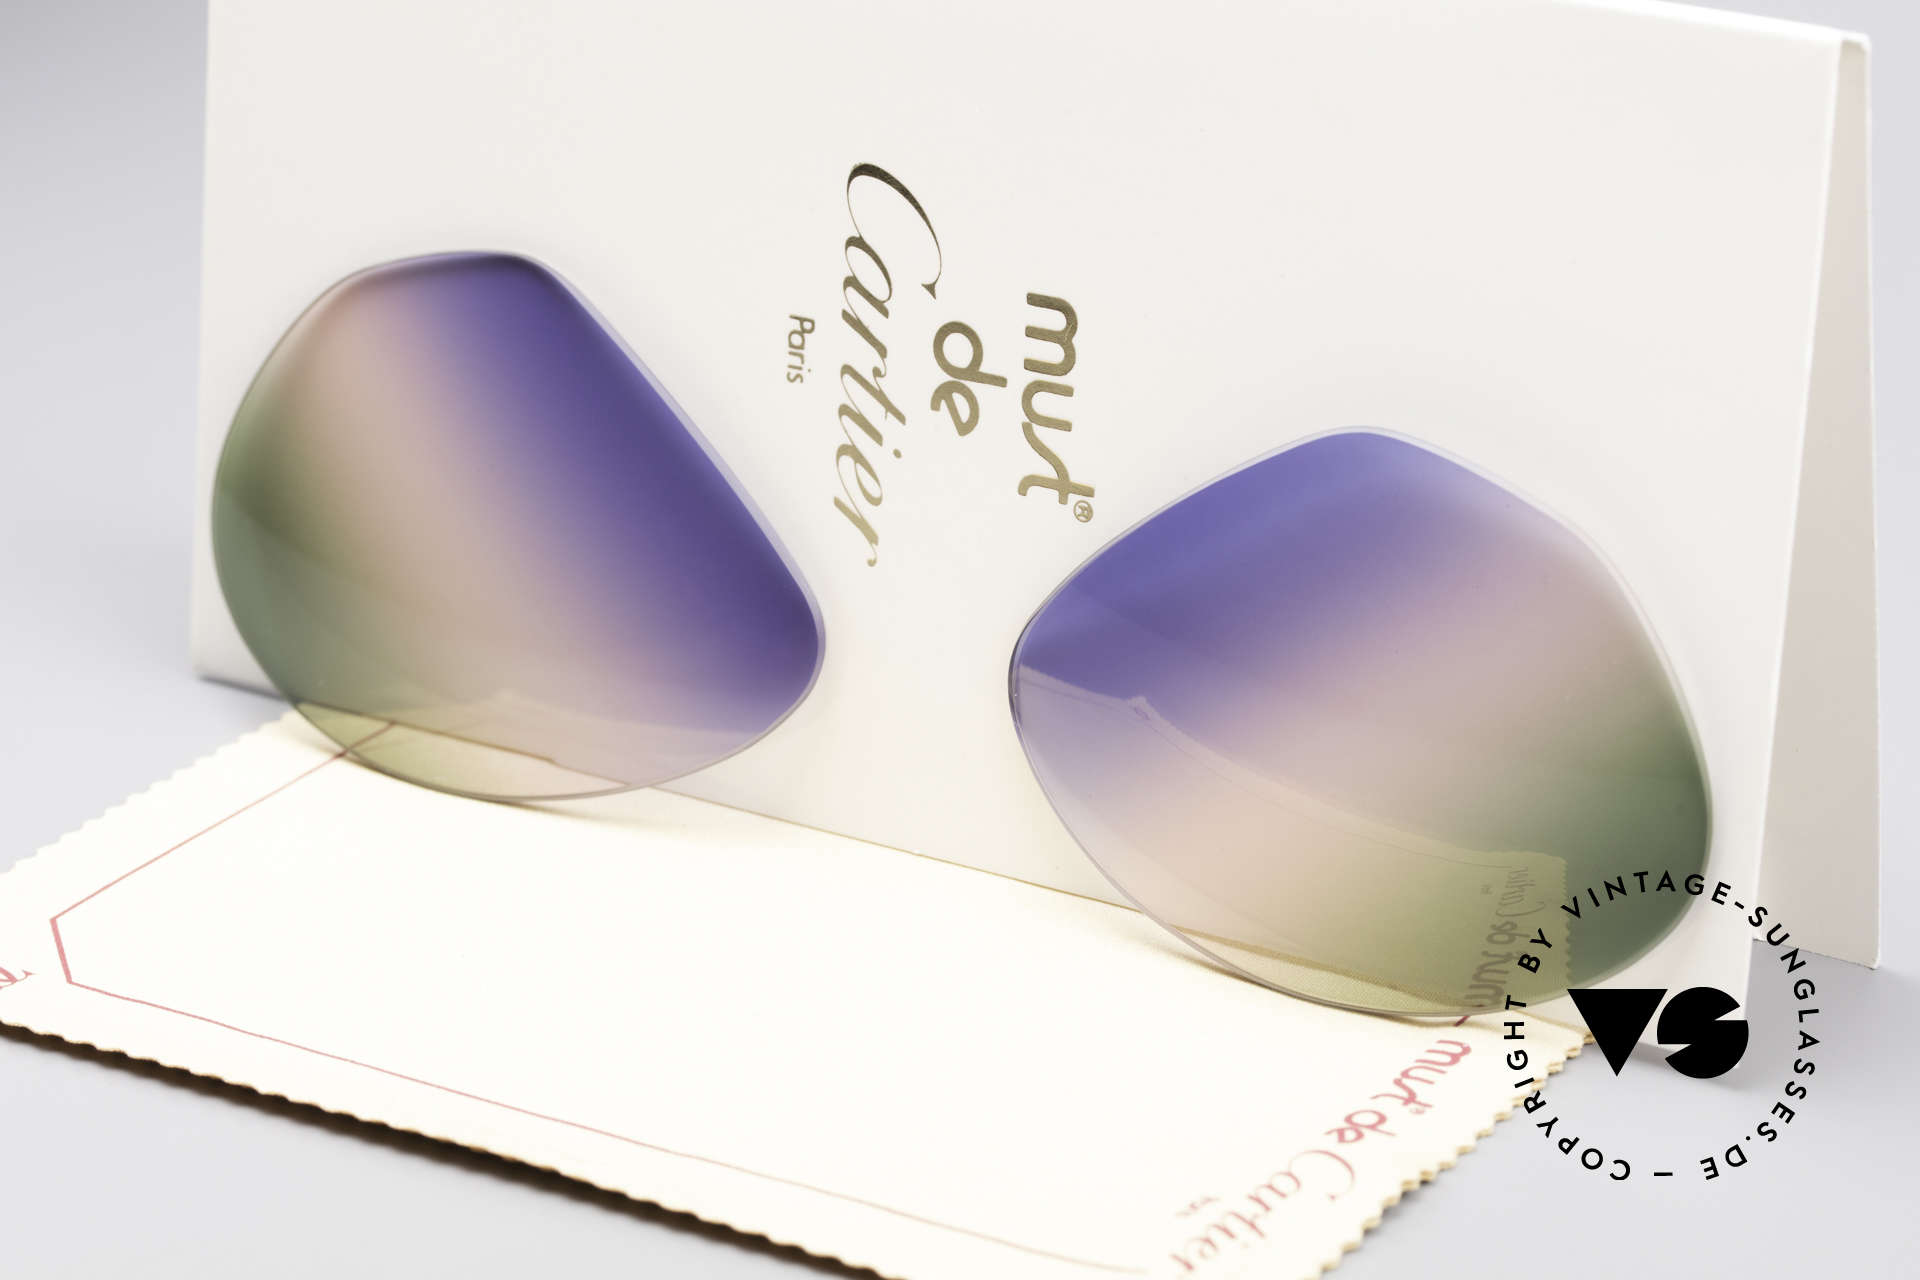 Cartier Vendome Lenses - L Tricolored Horizon Lenses, new CR39 UV400 plastic lenses (for 100% UV protection), Made for Men and Women